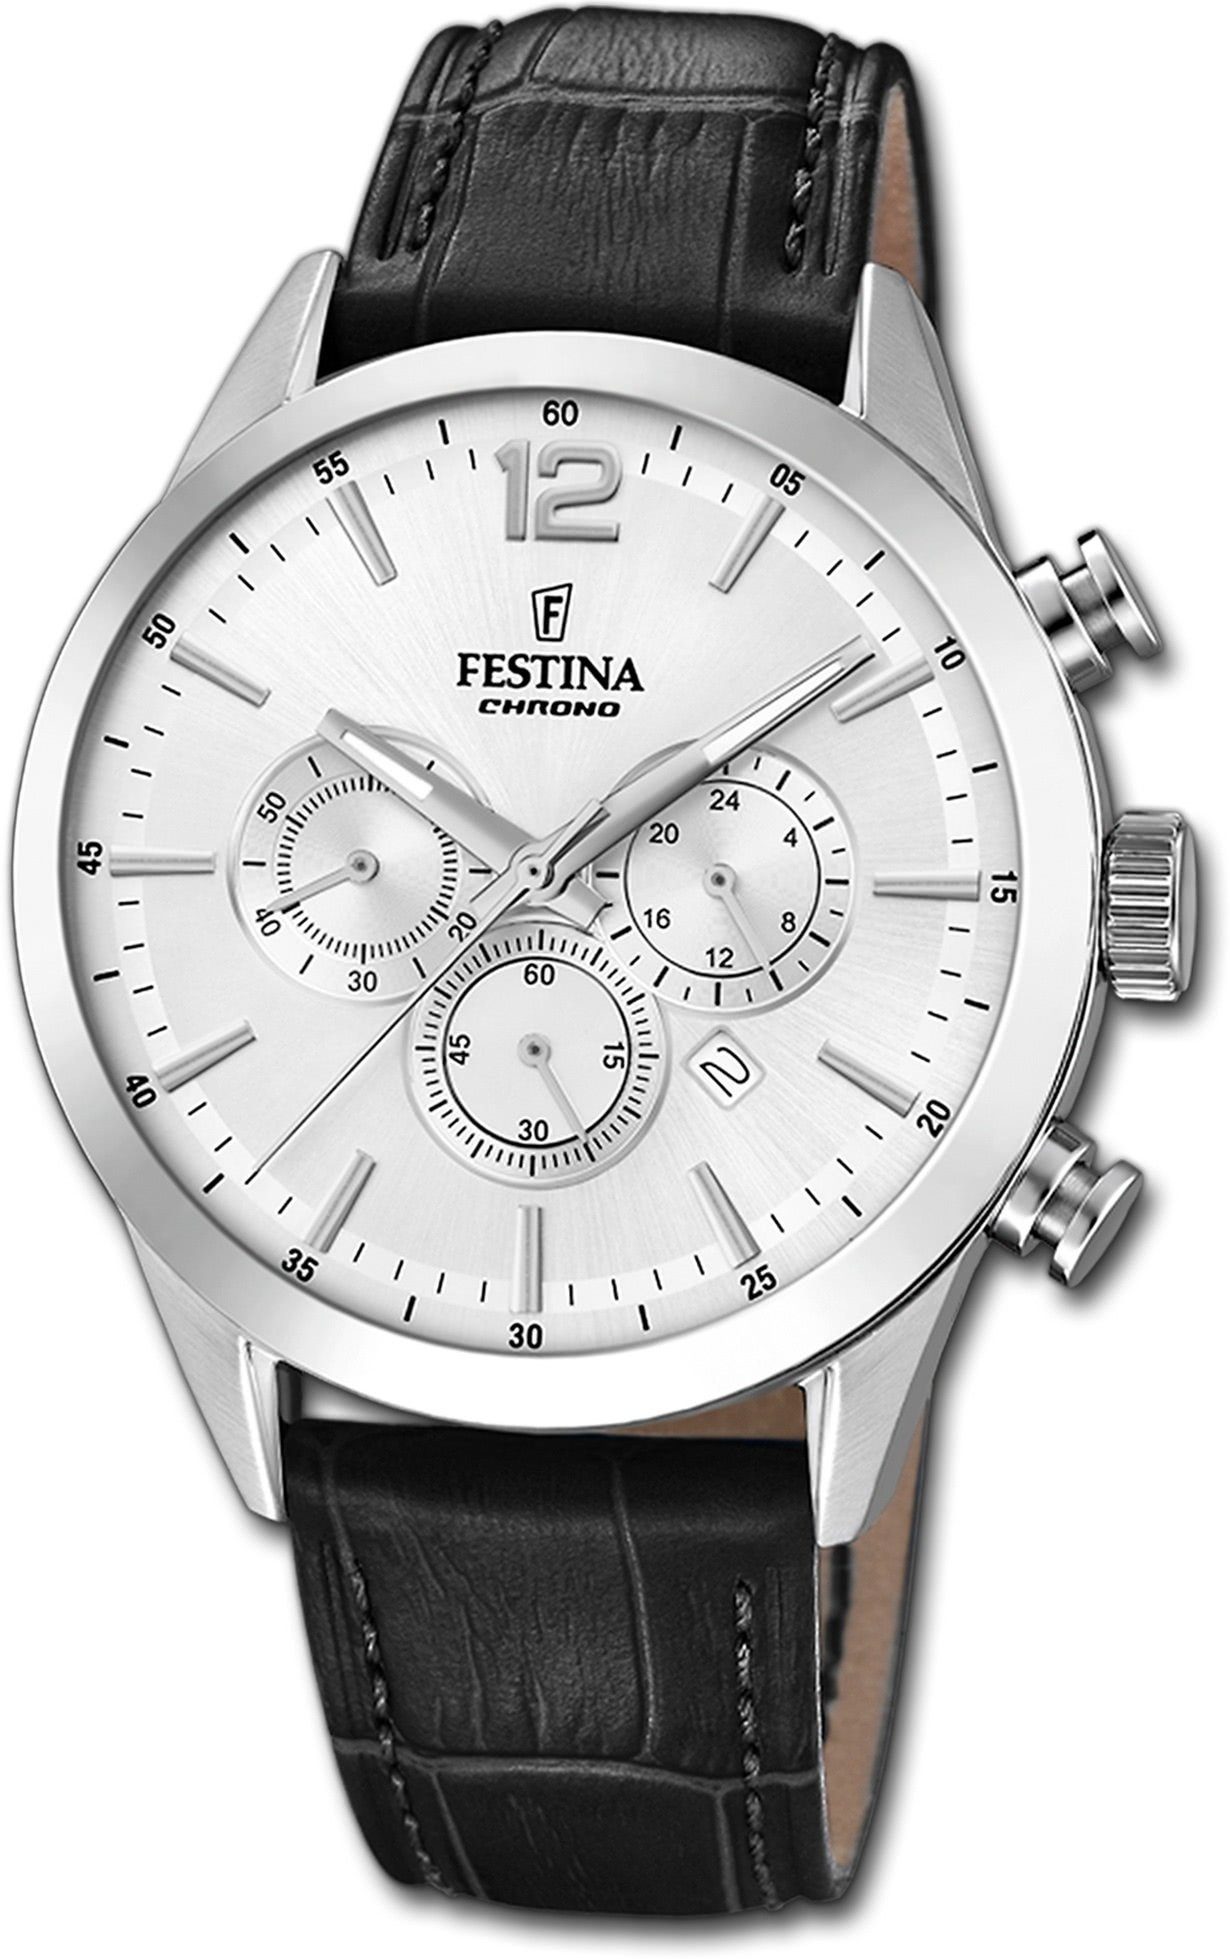 Festina Chronograph Festina Leder Herren Uhr F20542/1, Herrenuhr mit Lederarmband, rundes Gehäuse, groß (ca. 44mm), Fashion-S